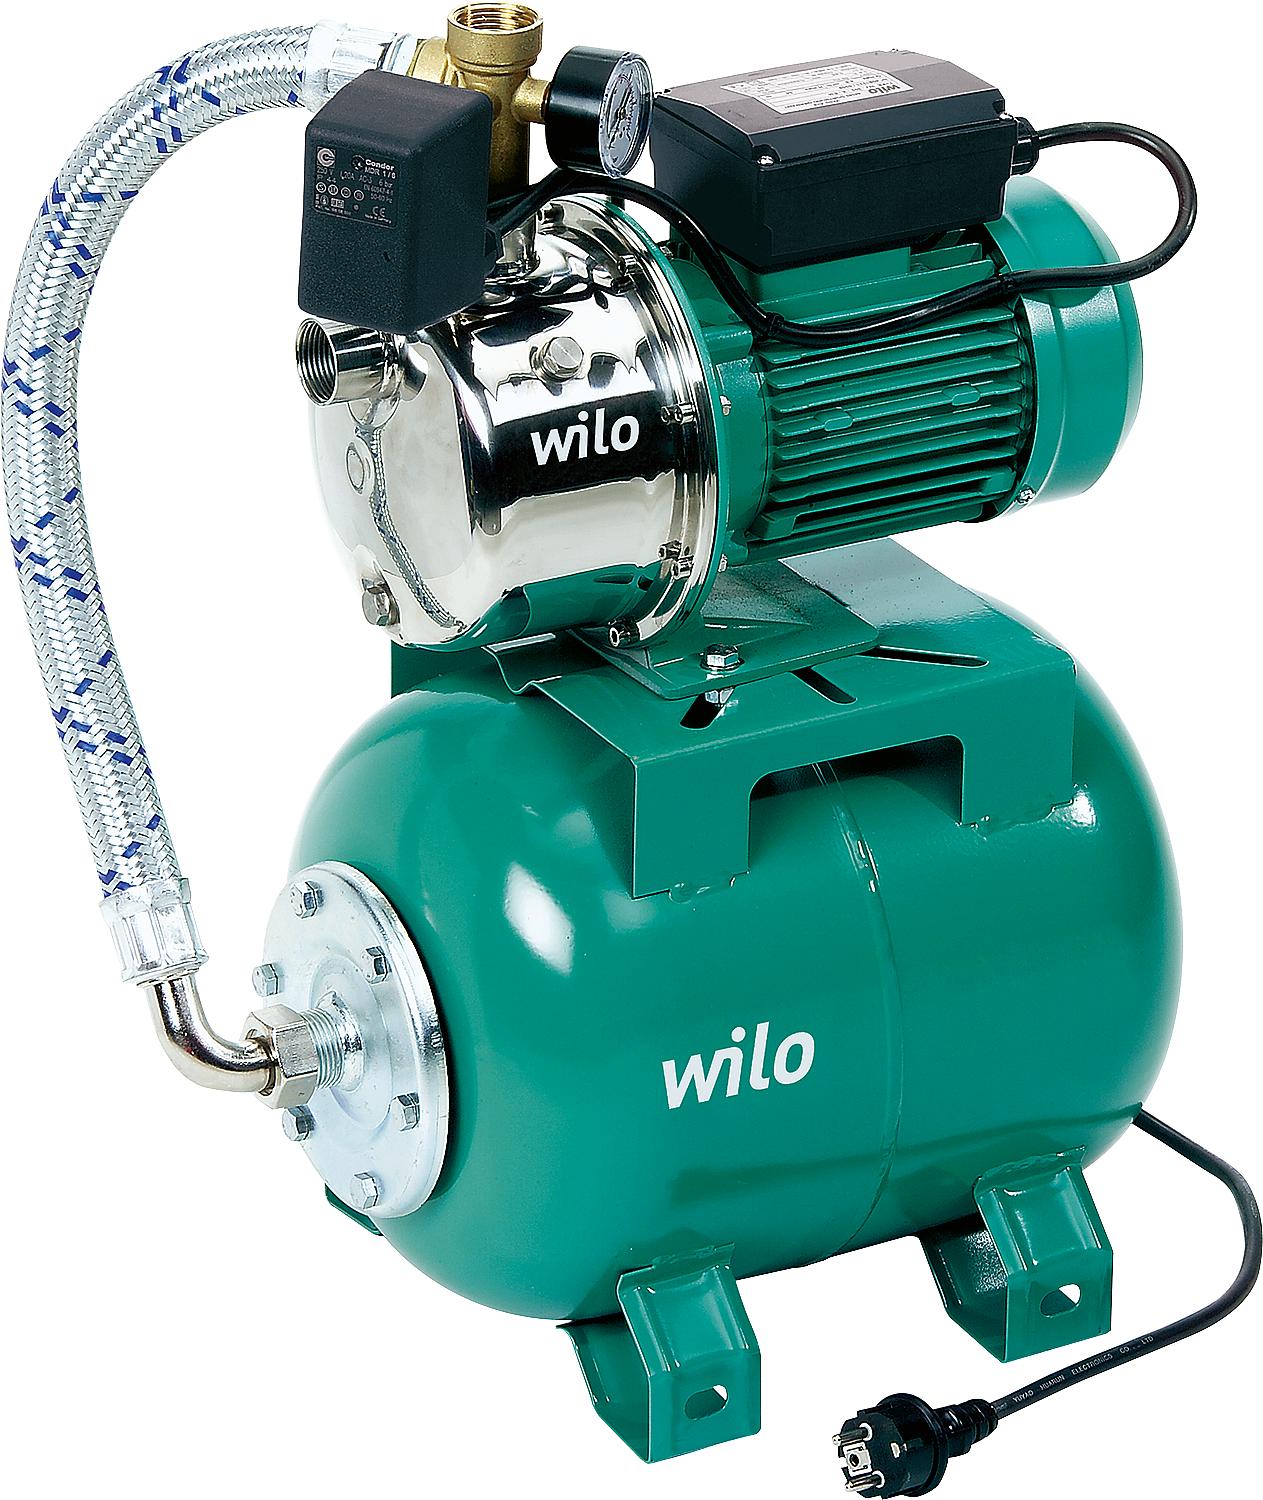 Wilo Jet - Hauswasserwerk Wilo-Jet HWJ 20L 203 Hauswasswerwerk selbstansaugend DN 25 (1"), 20-L Stahlbehälter